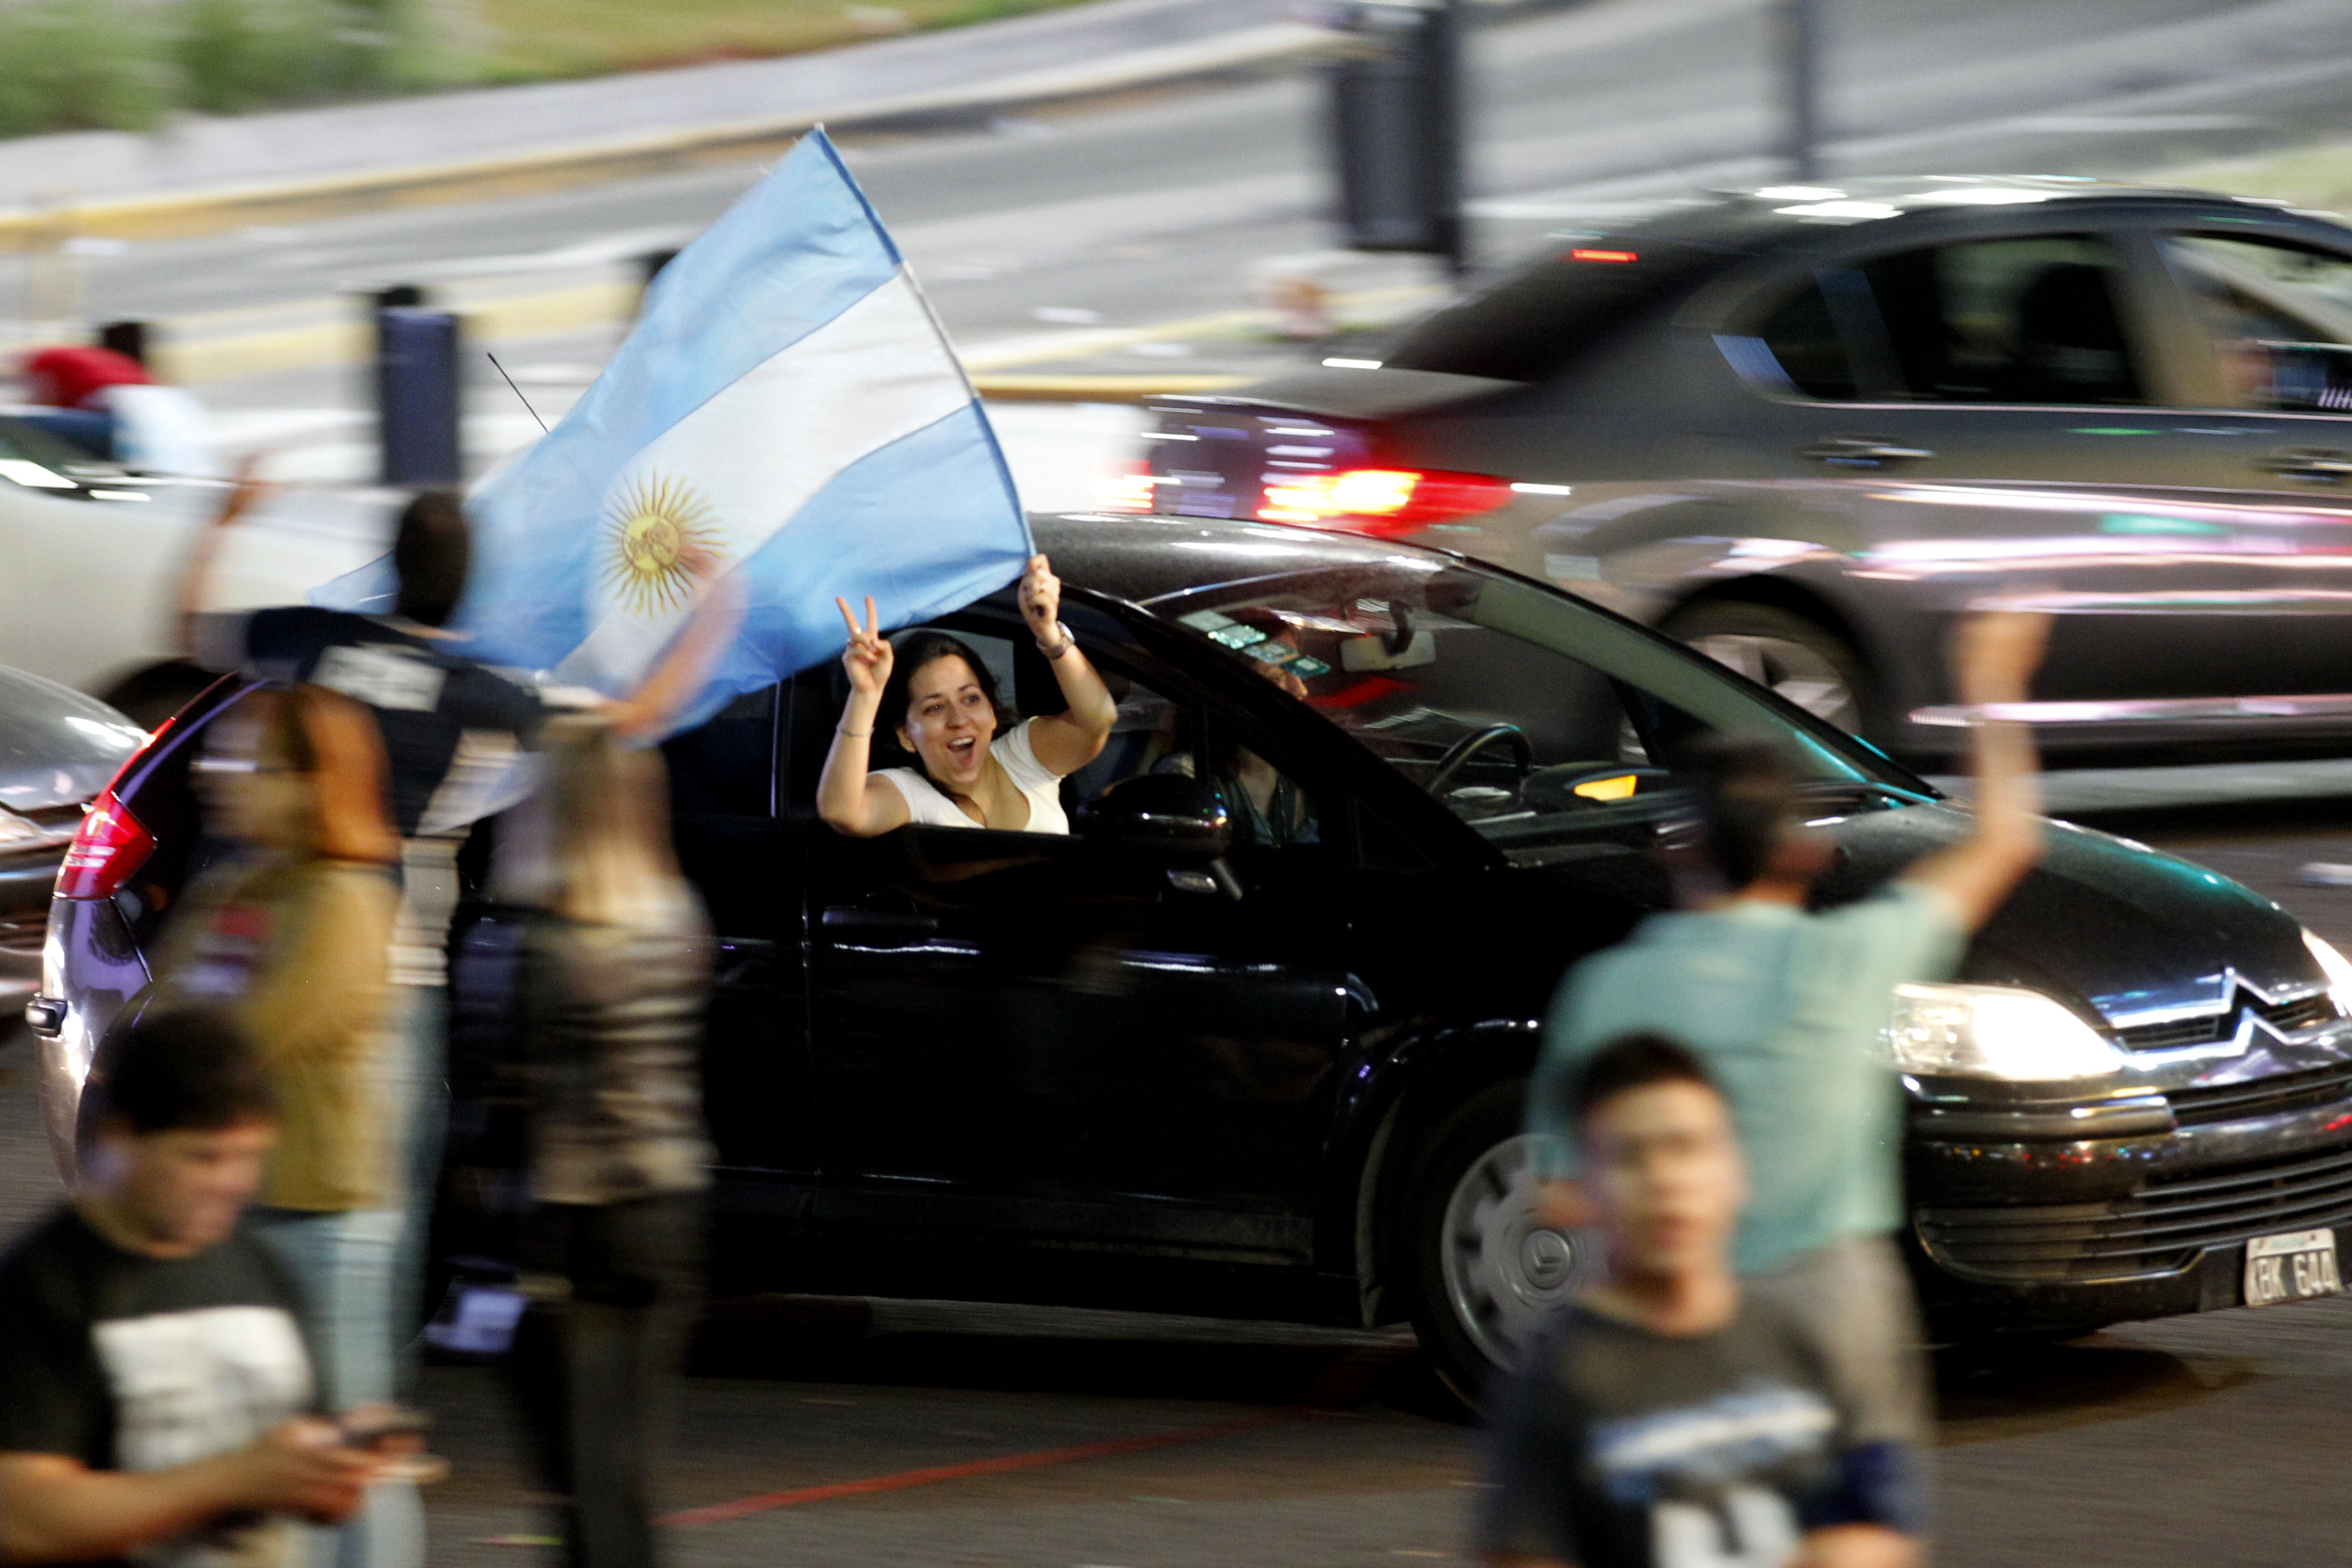 Elismerte vereségét az argentin elnök, visszatér a baloldal